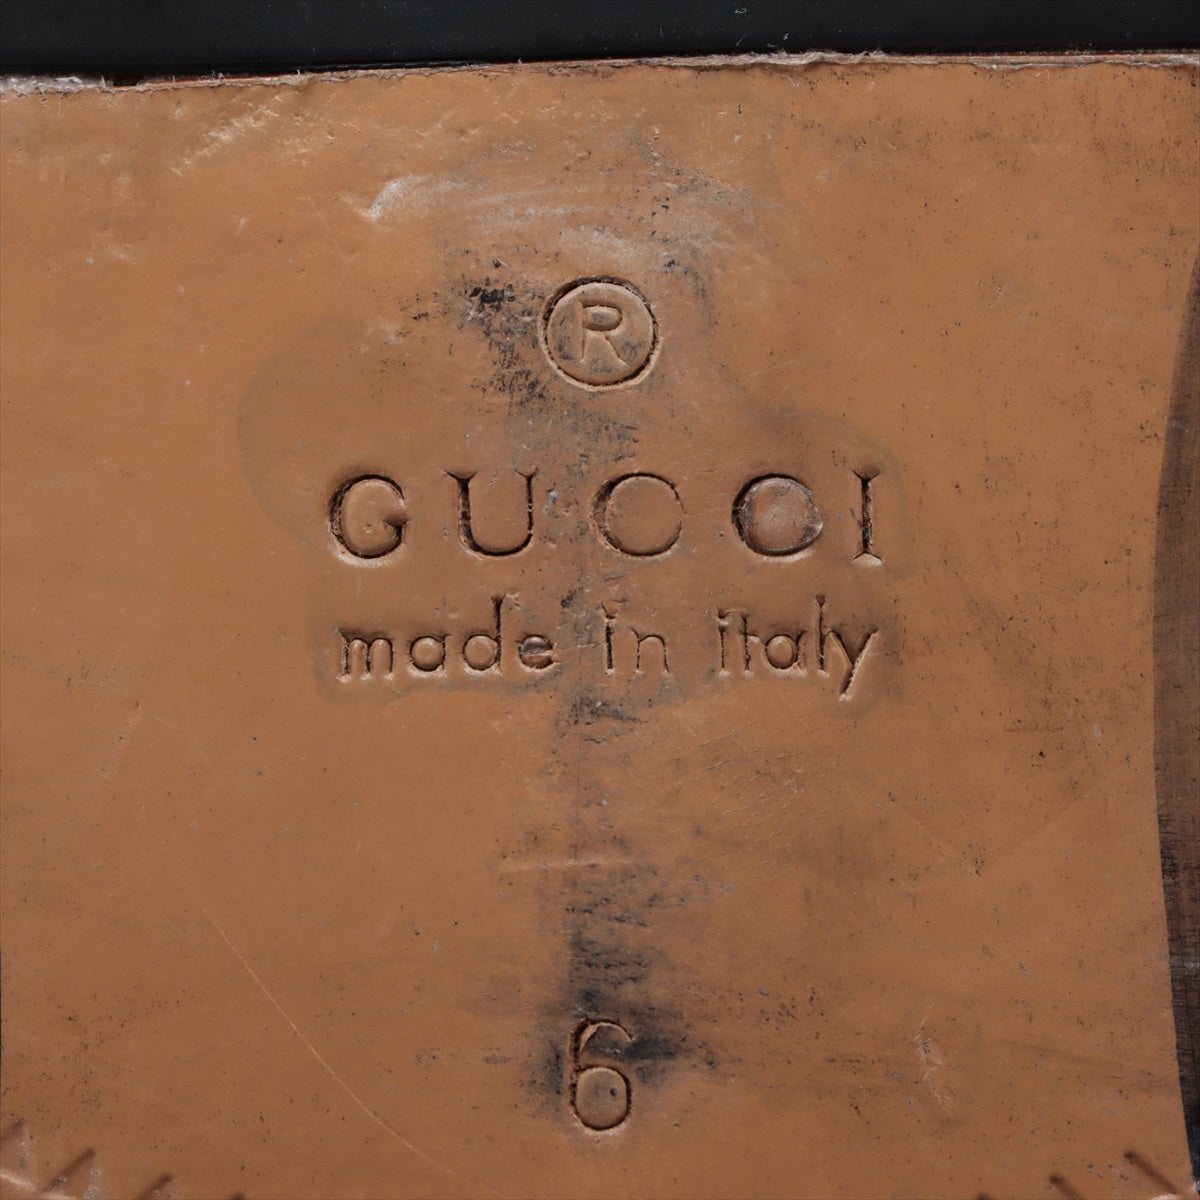 Gucci GG Marmont Leather Dress Shoes 6 Men Black 643621